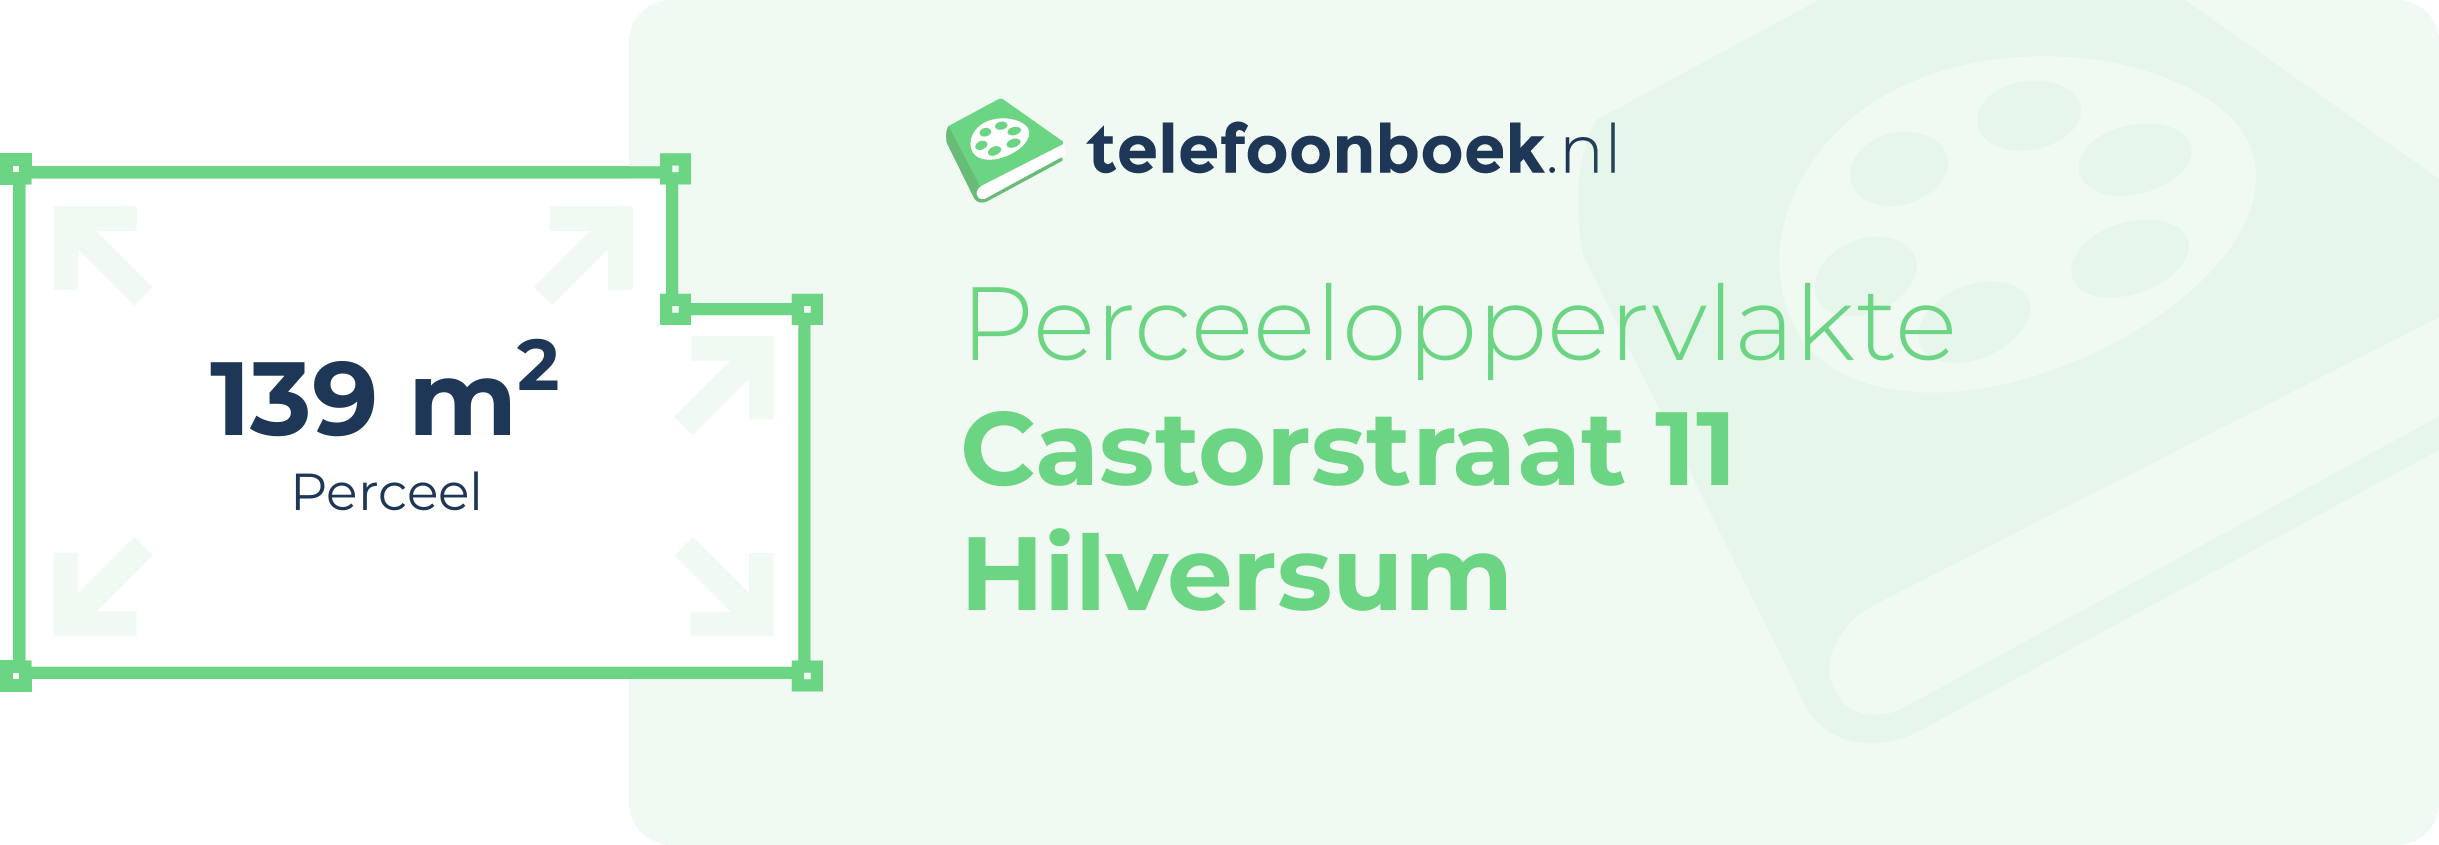 Perceeloppervlakte Castorstraat 11 Hilversum